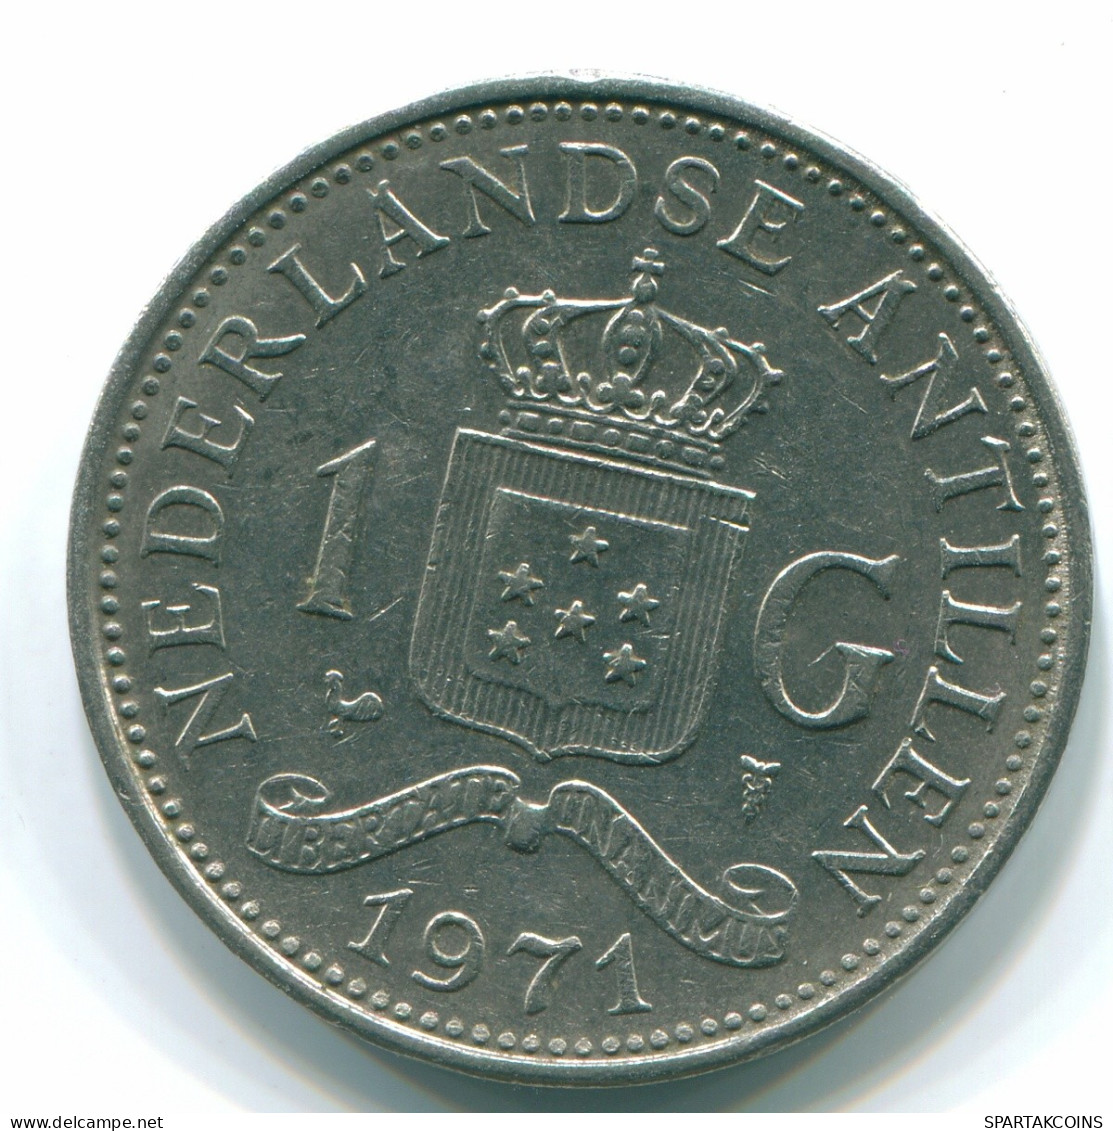 1 GULDEN 1971 ANTILLAS NEERLANDESAS Nickel Colonial Moneda #S11941.E.A - Nederlandse Antillen